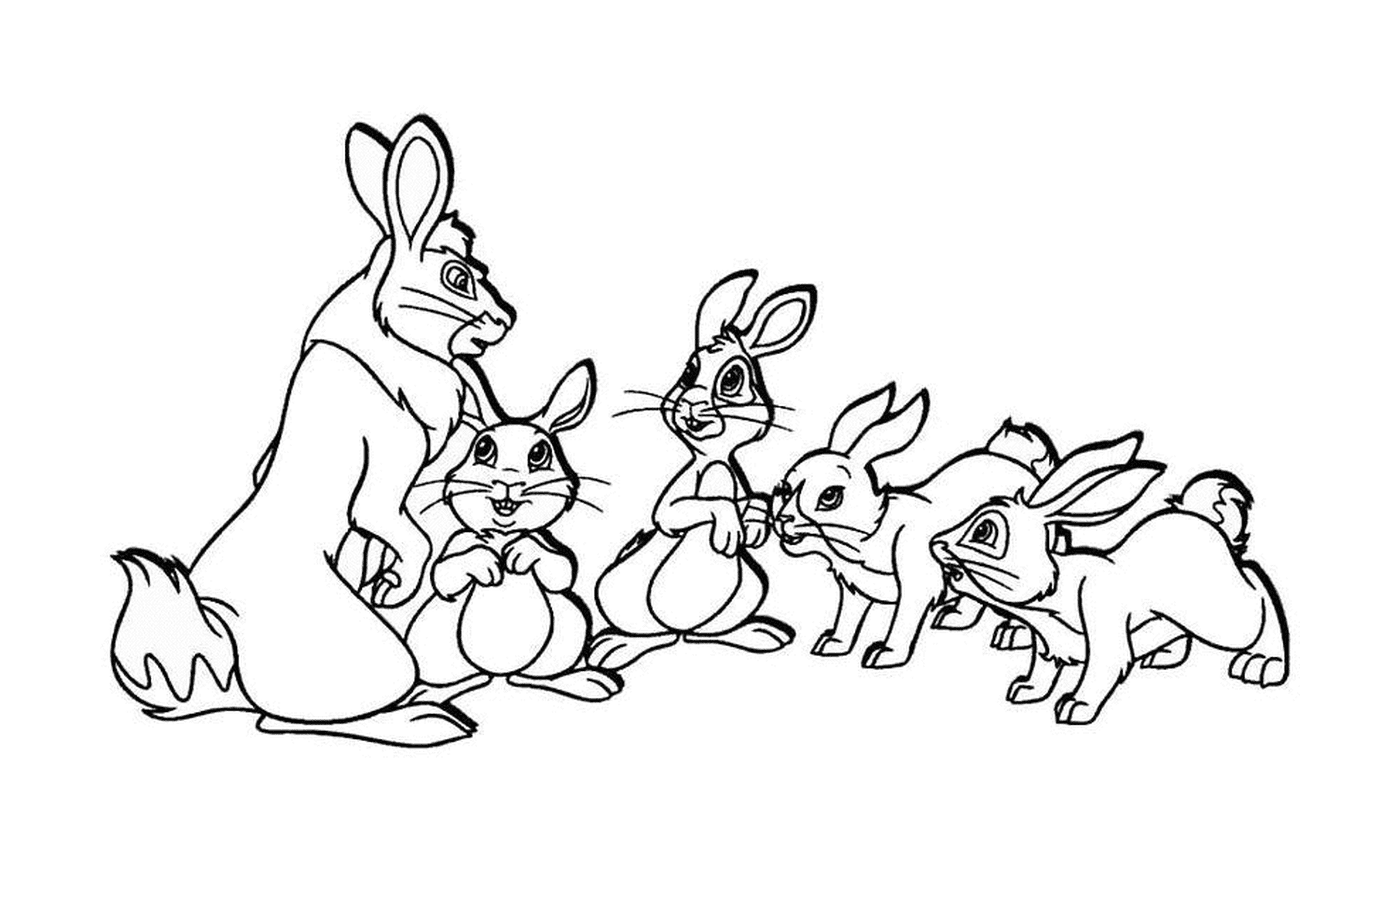  مجموعة الأرانب الصغيرة 